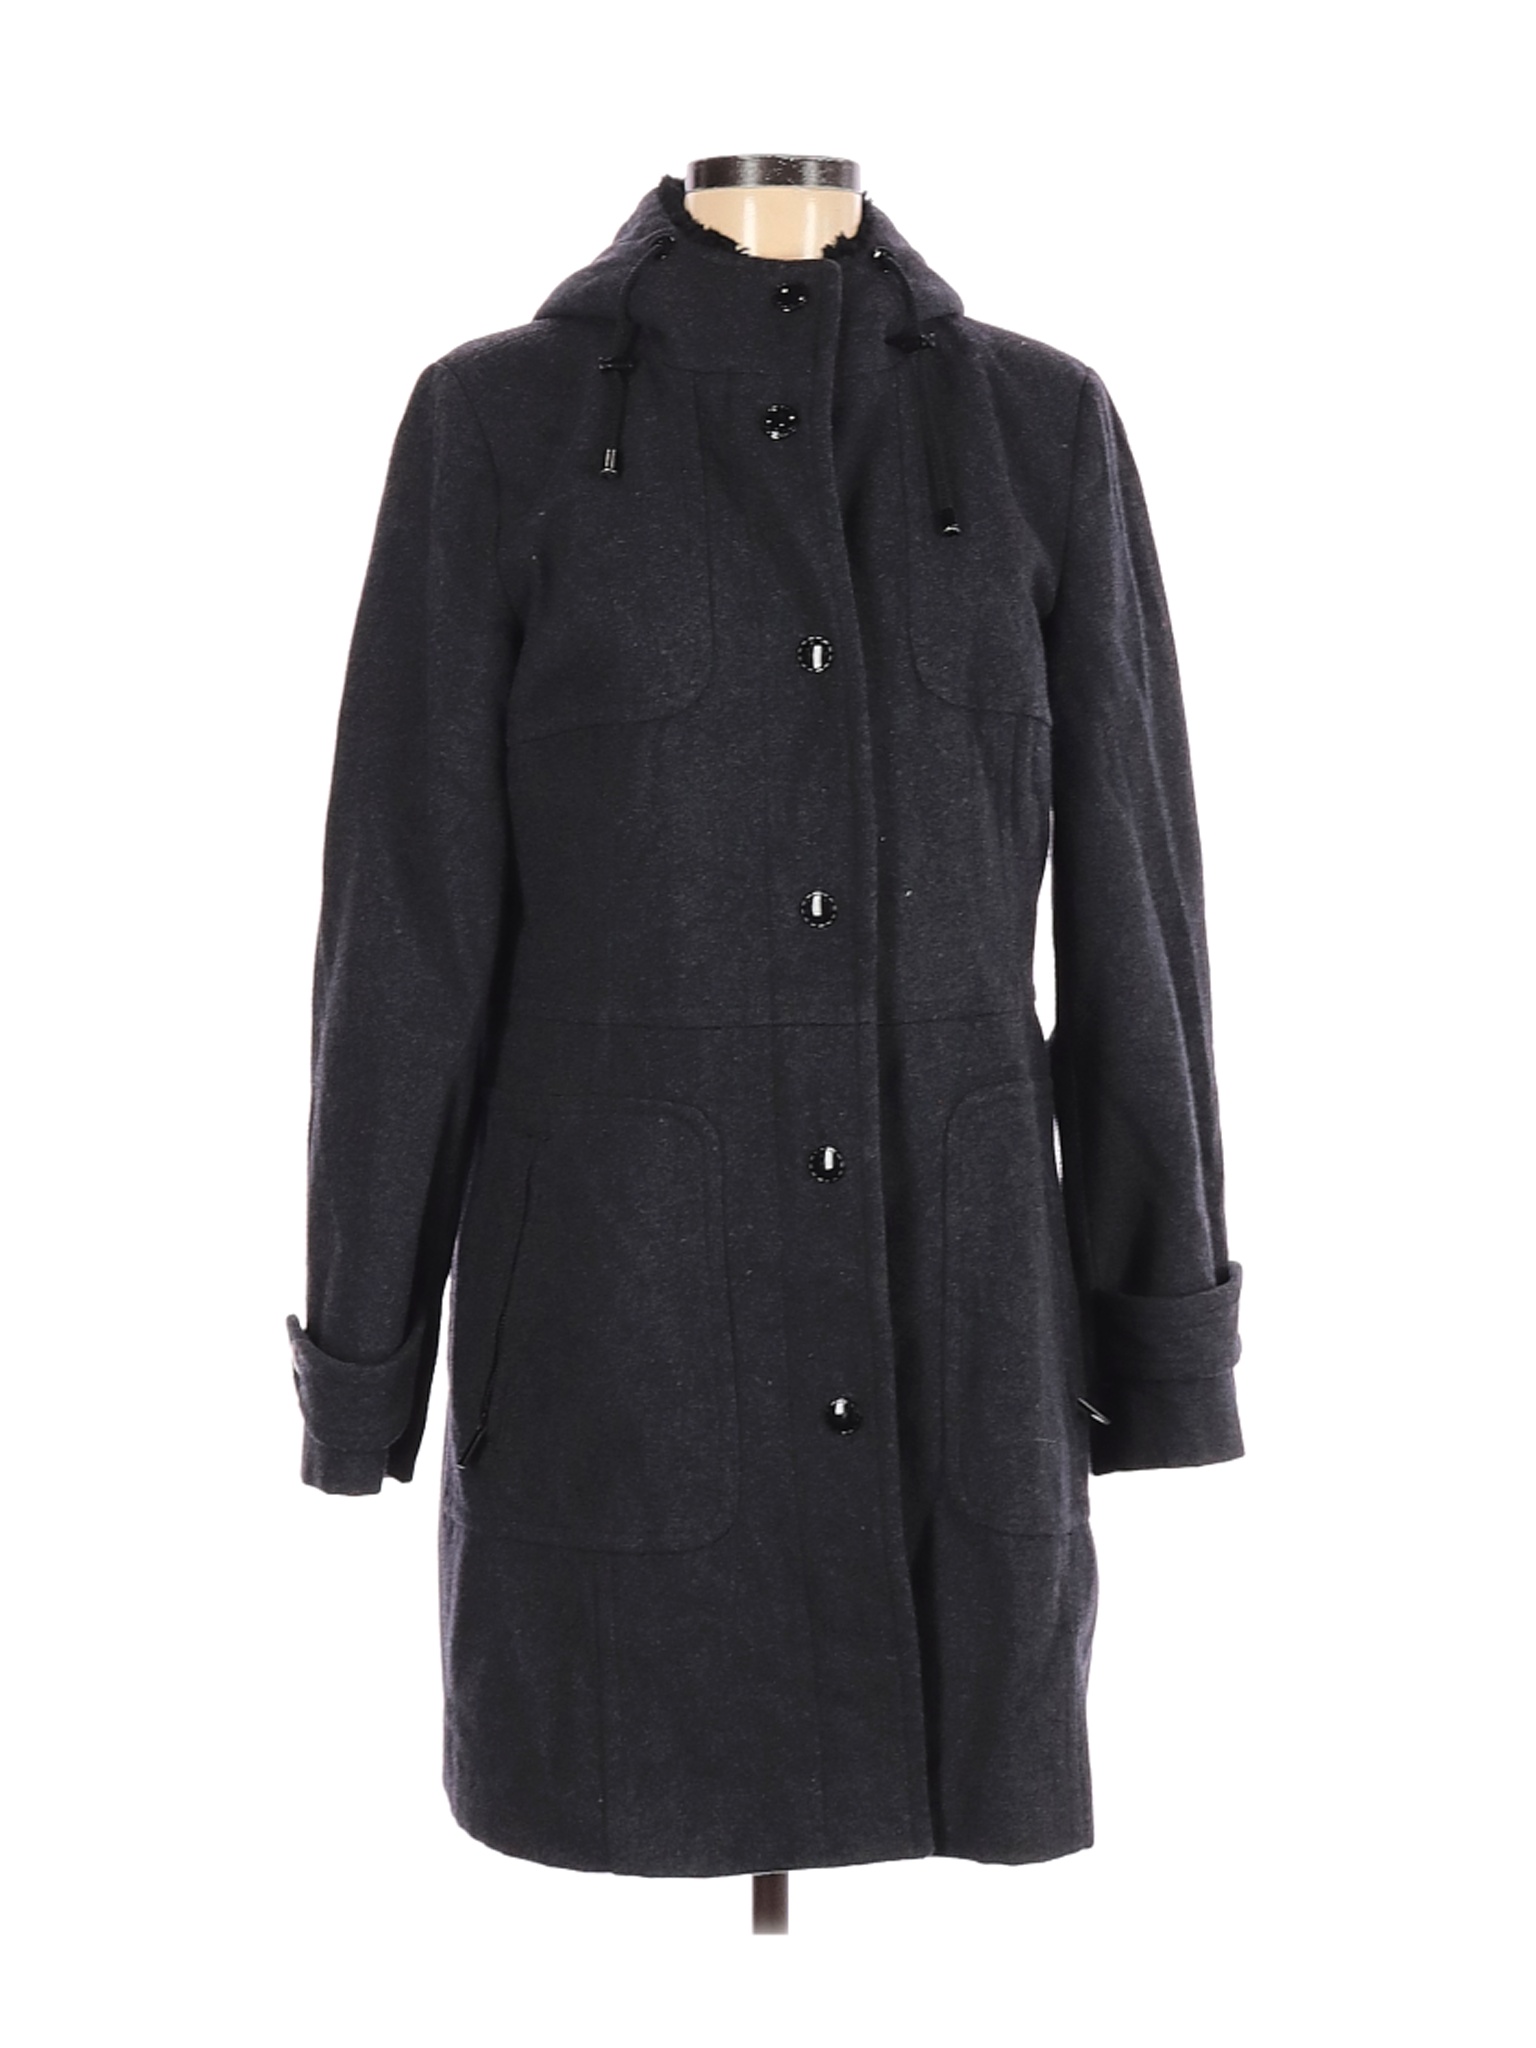 London Fog Women Black Wool Coat M | eBay